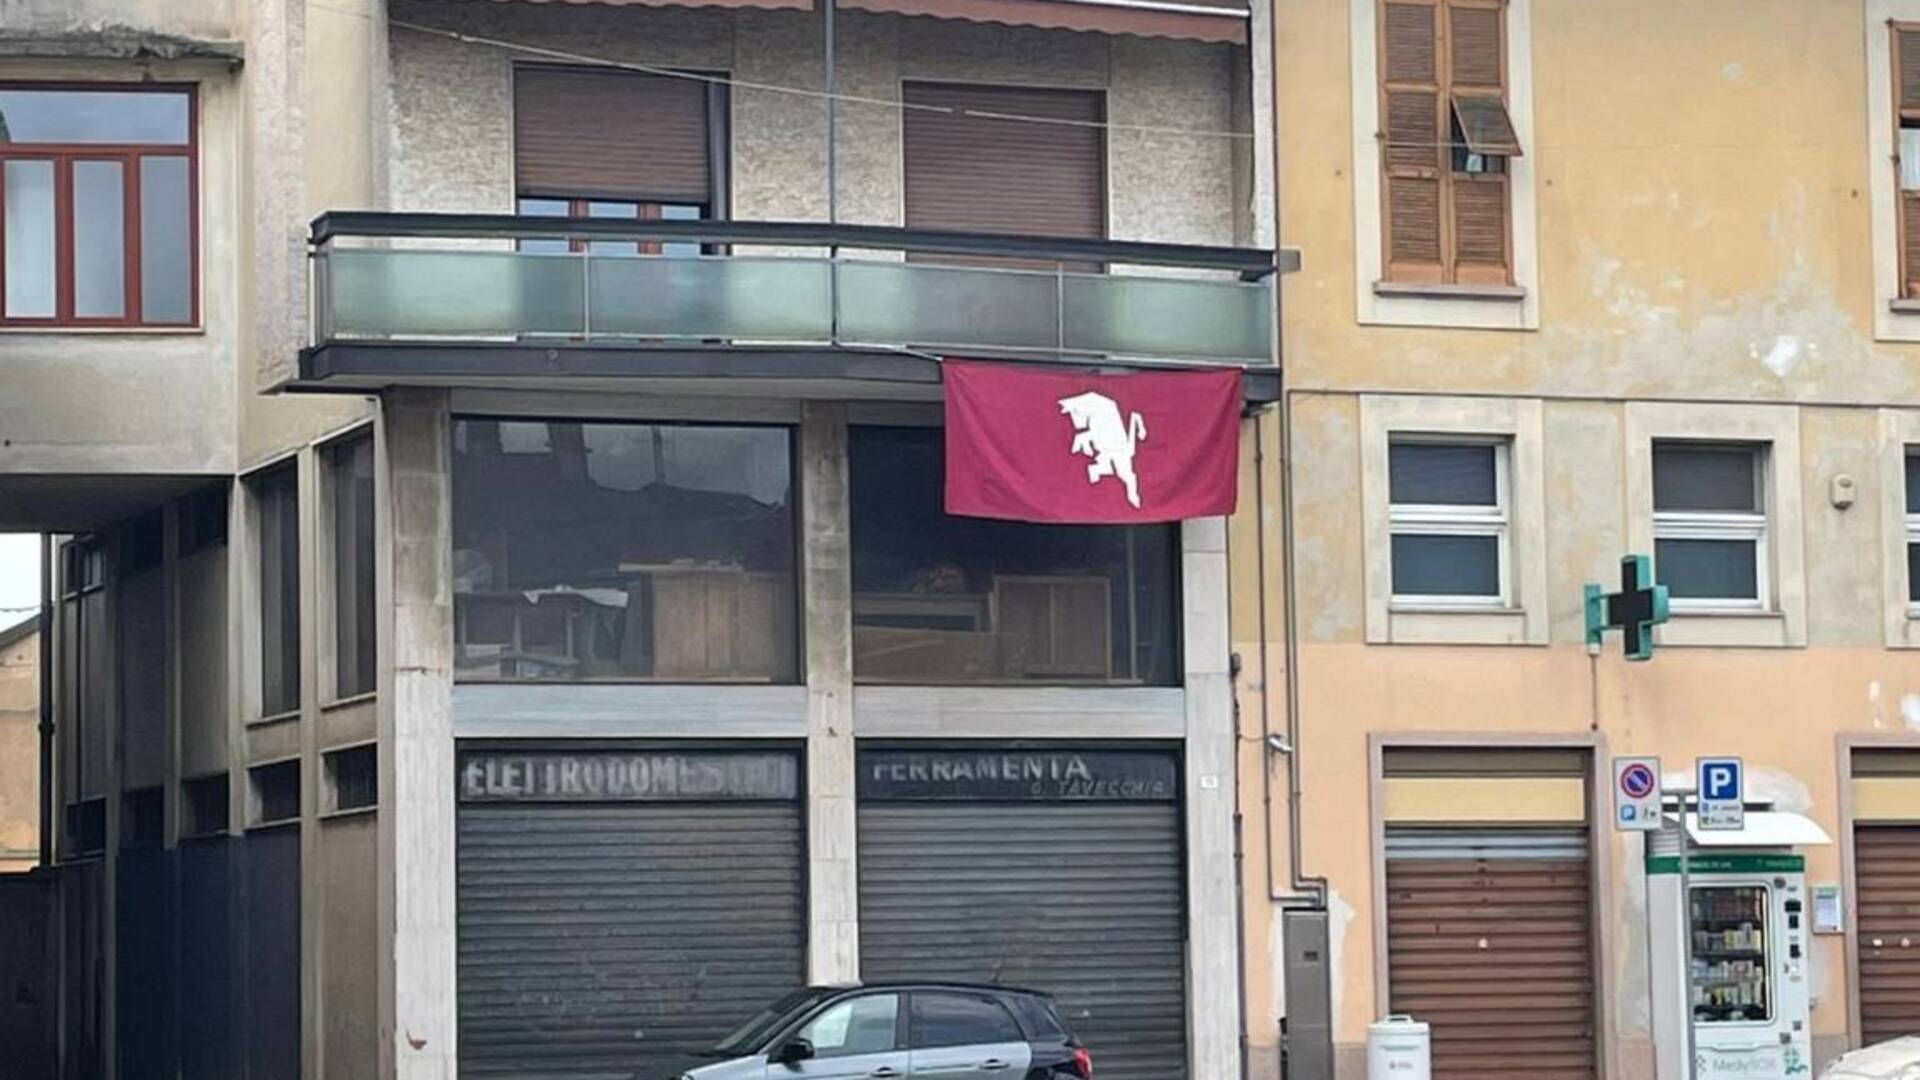 Grande Torino: il ricordo anche nel Saronnese. Bandiera in centro a Uboldo